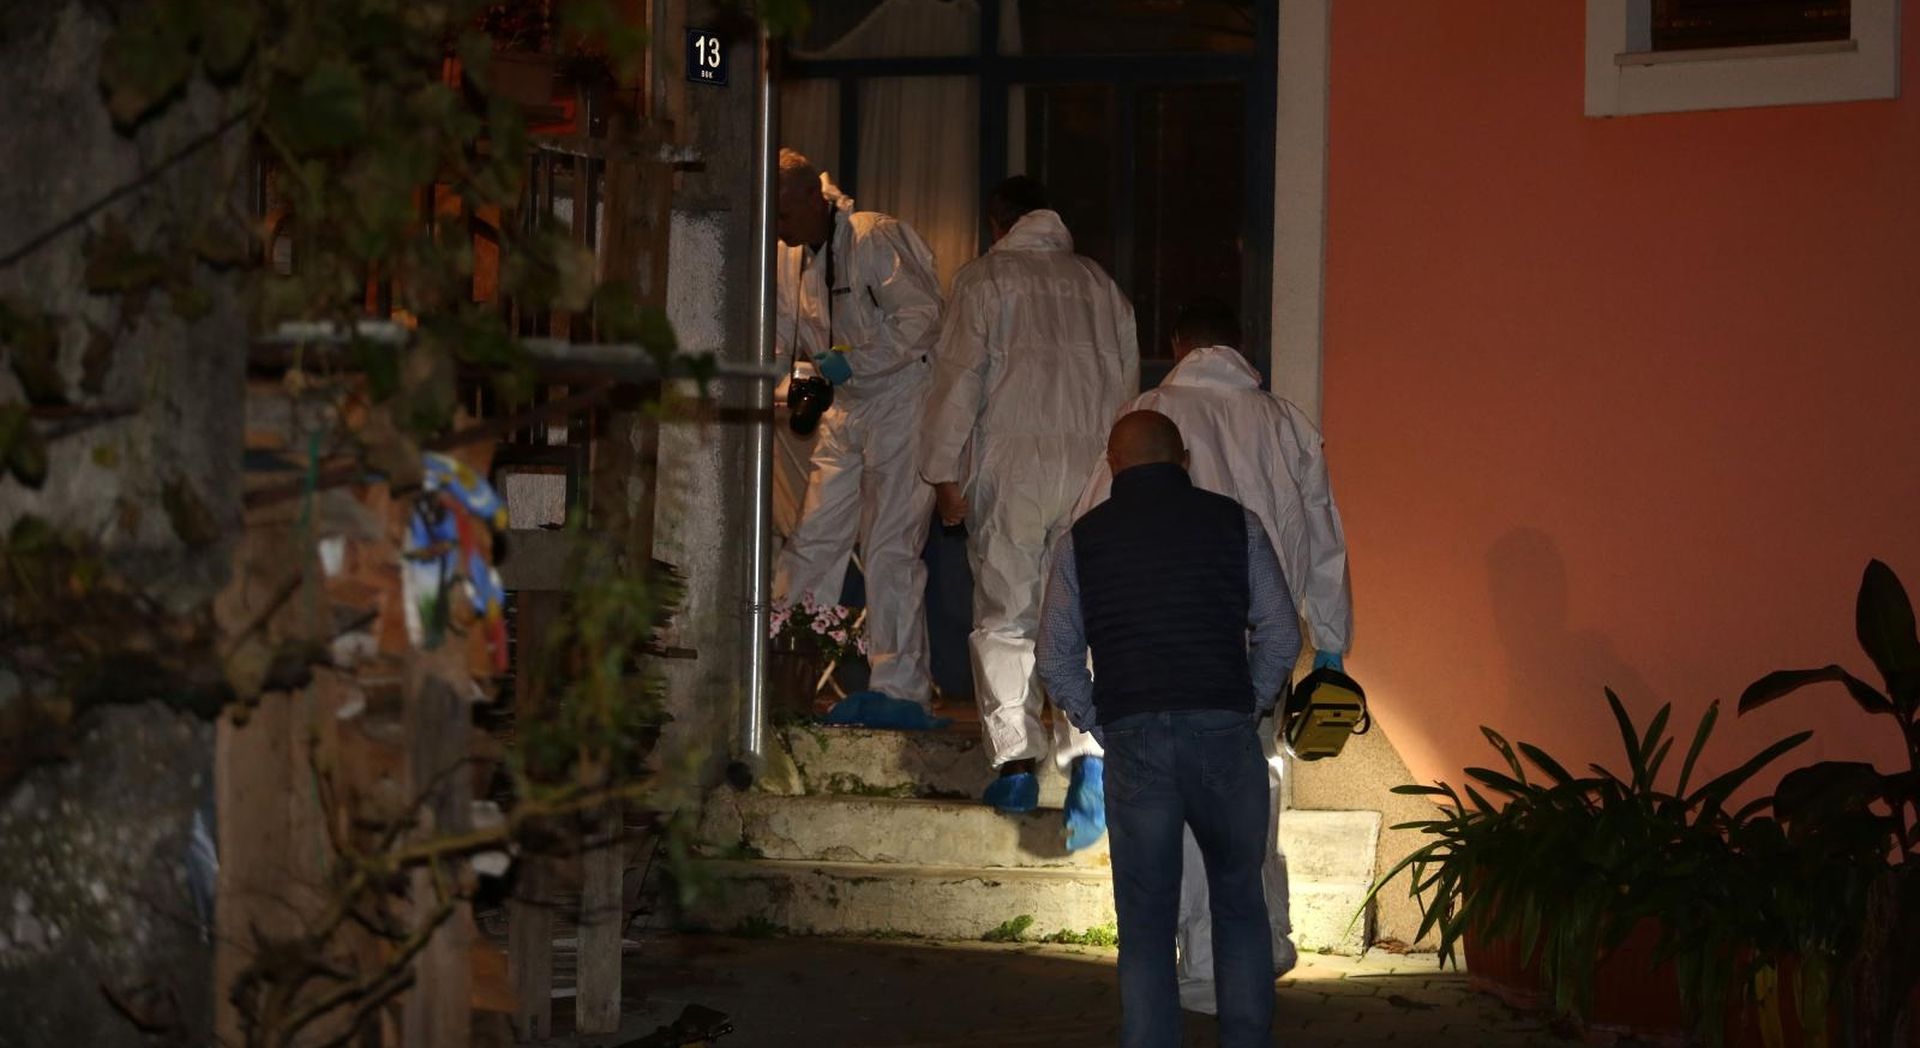 23.10.2019., Rijeka - Mrtvo tijelo zenske osobe pronadjeno u kuci  u mjestu Cavle. Policija obavlja ocevid.
Photo:Goran Kovacic/PIXSELL